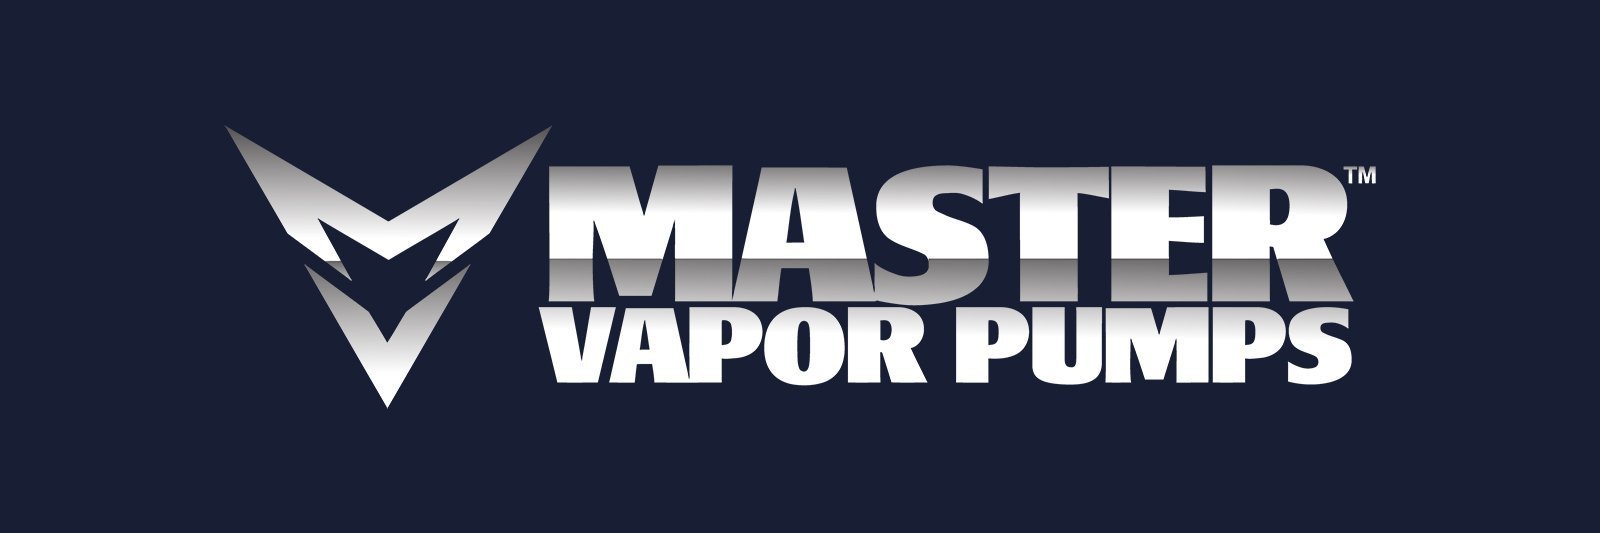 Master Vapor Pumps, Pump Part - MVP - 60 PSI, 150 PSI, Liquid, XL150 - CO2 Regulator